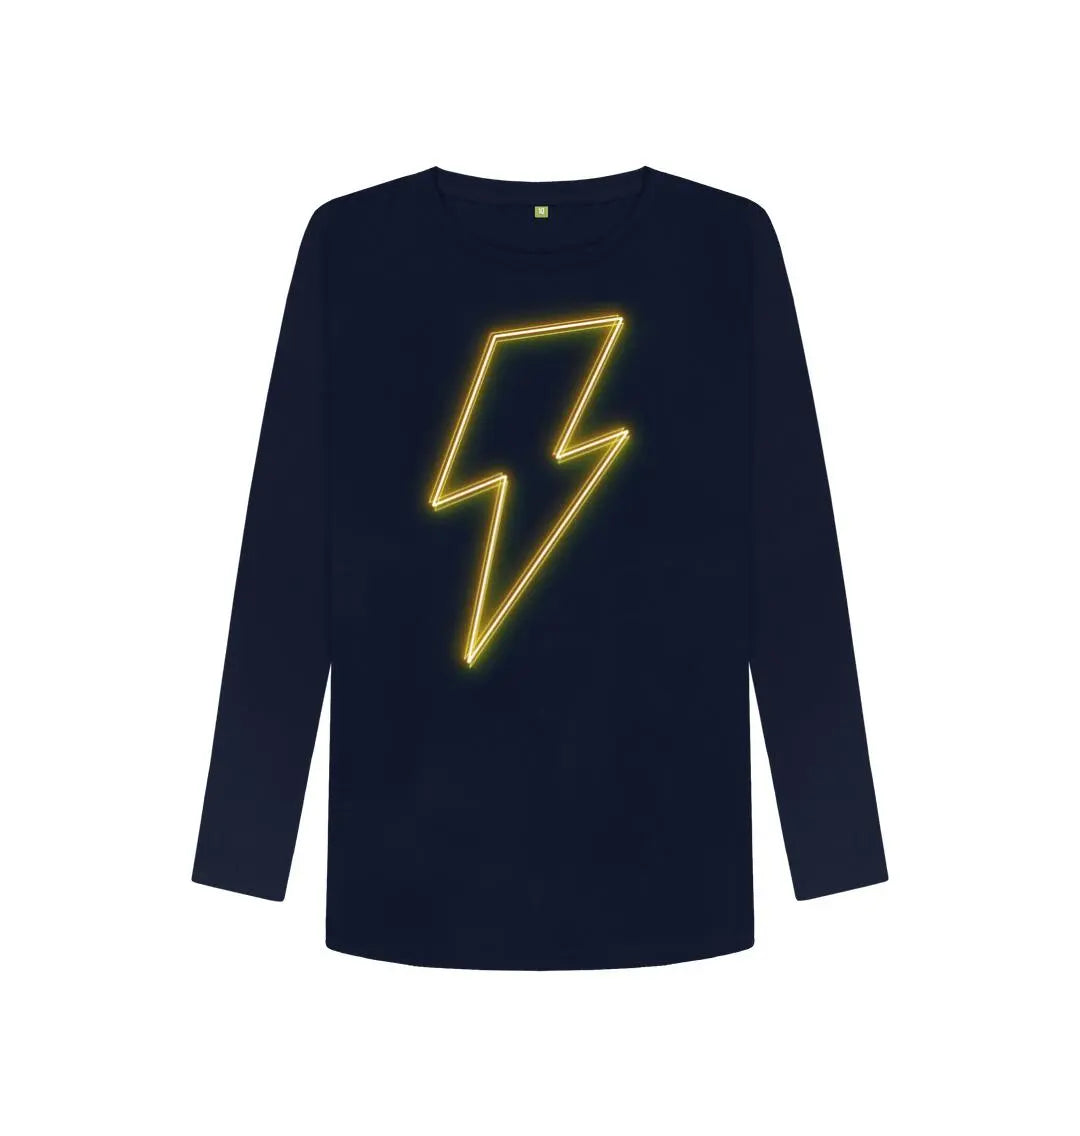 Long sleeve neon lightning bolt t-shirt